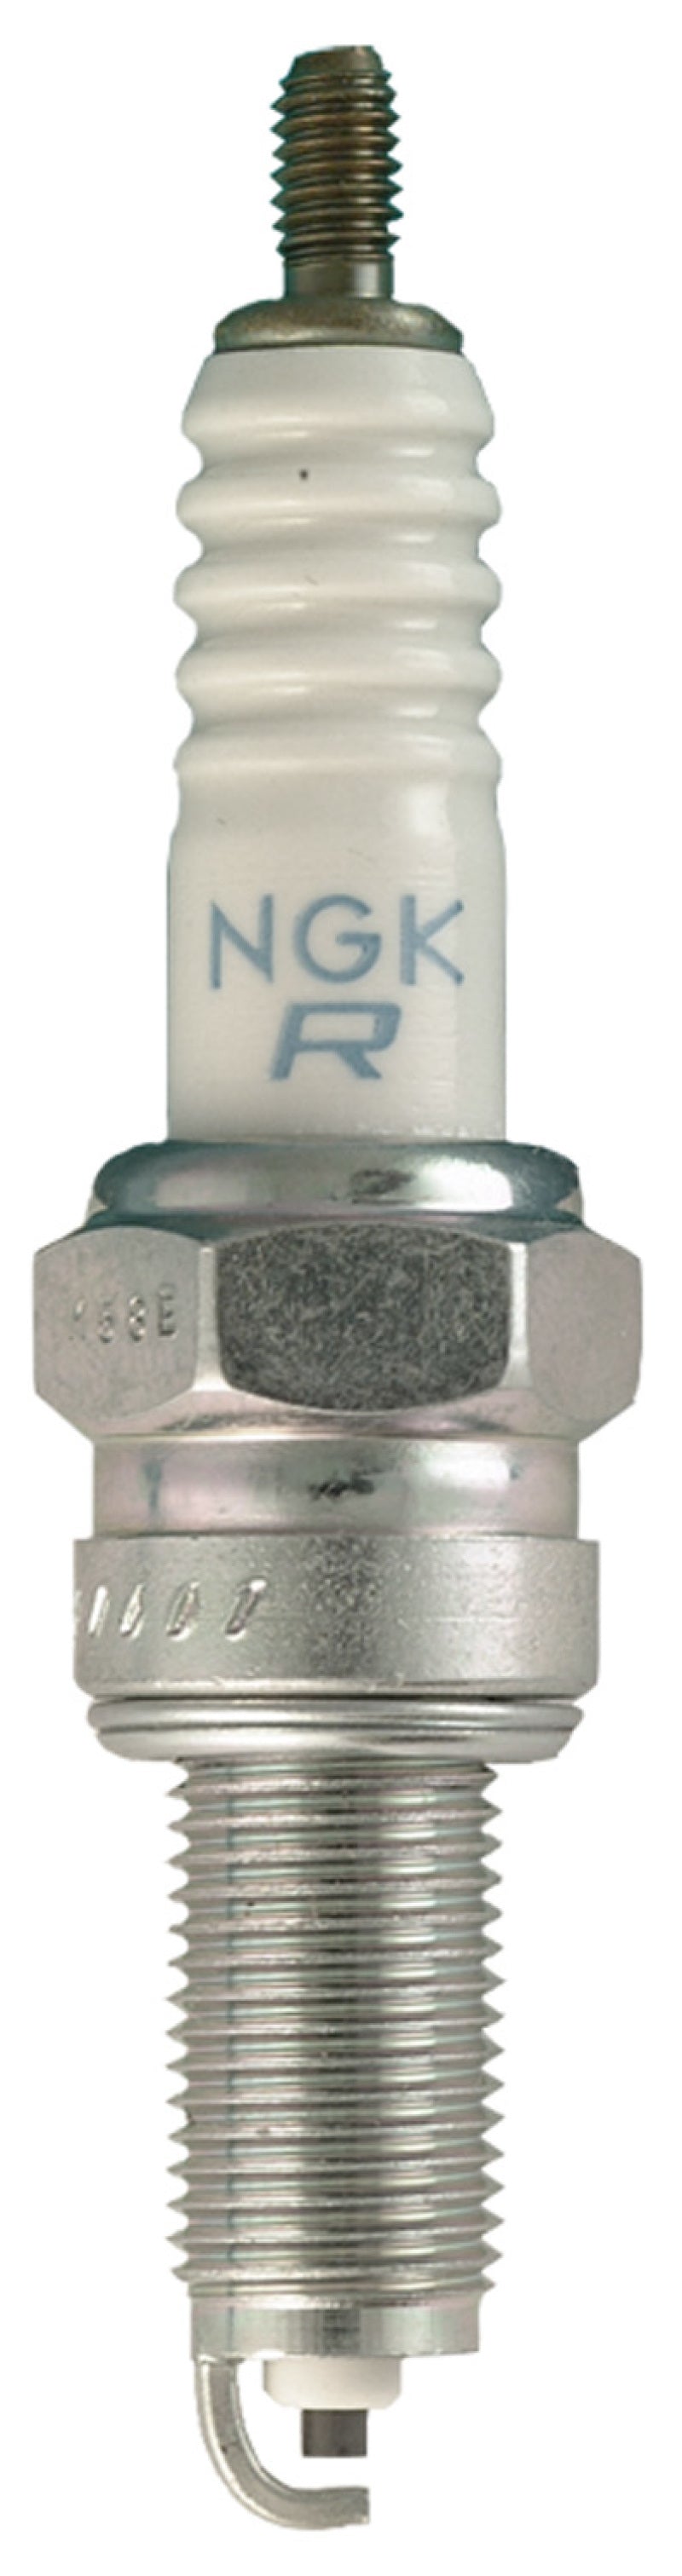 NGK Standard Spark Plug Box of 4 (CPR8EA-9)